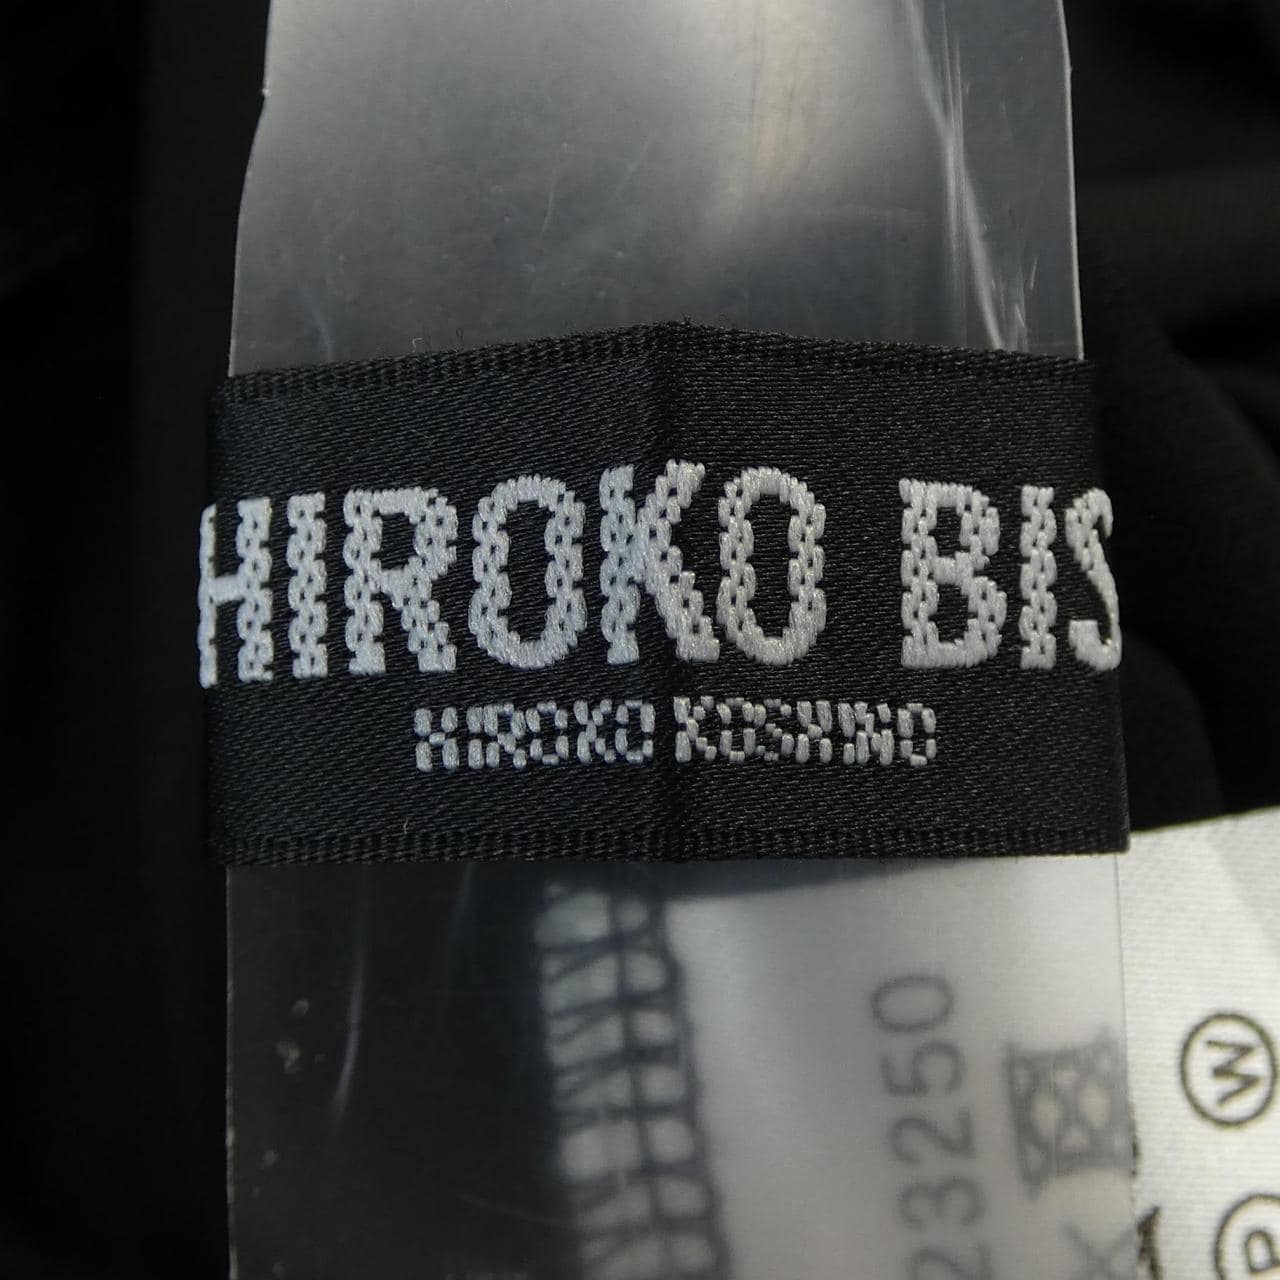 ヒロコ ビス HIROKO BIS チュニック